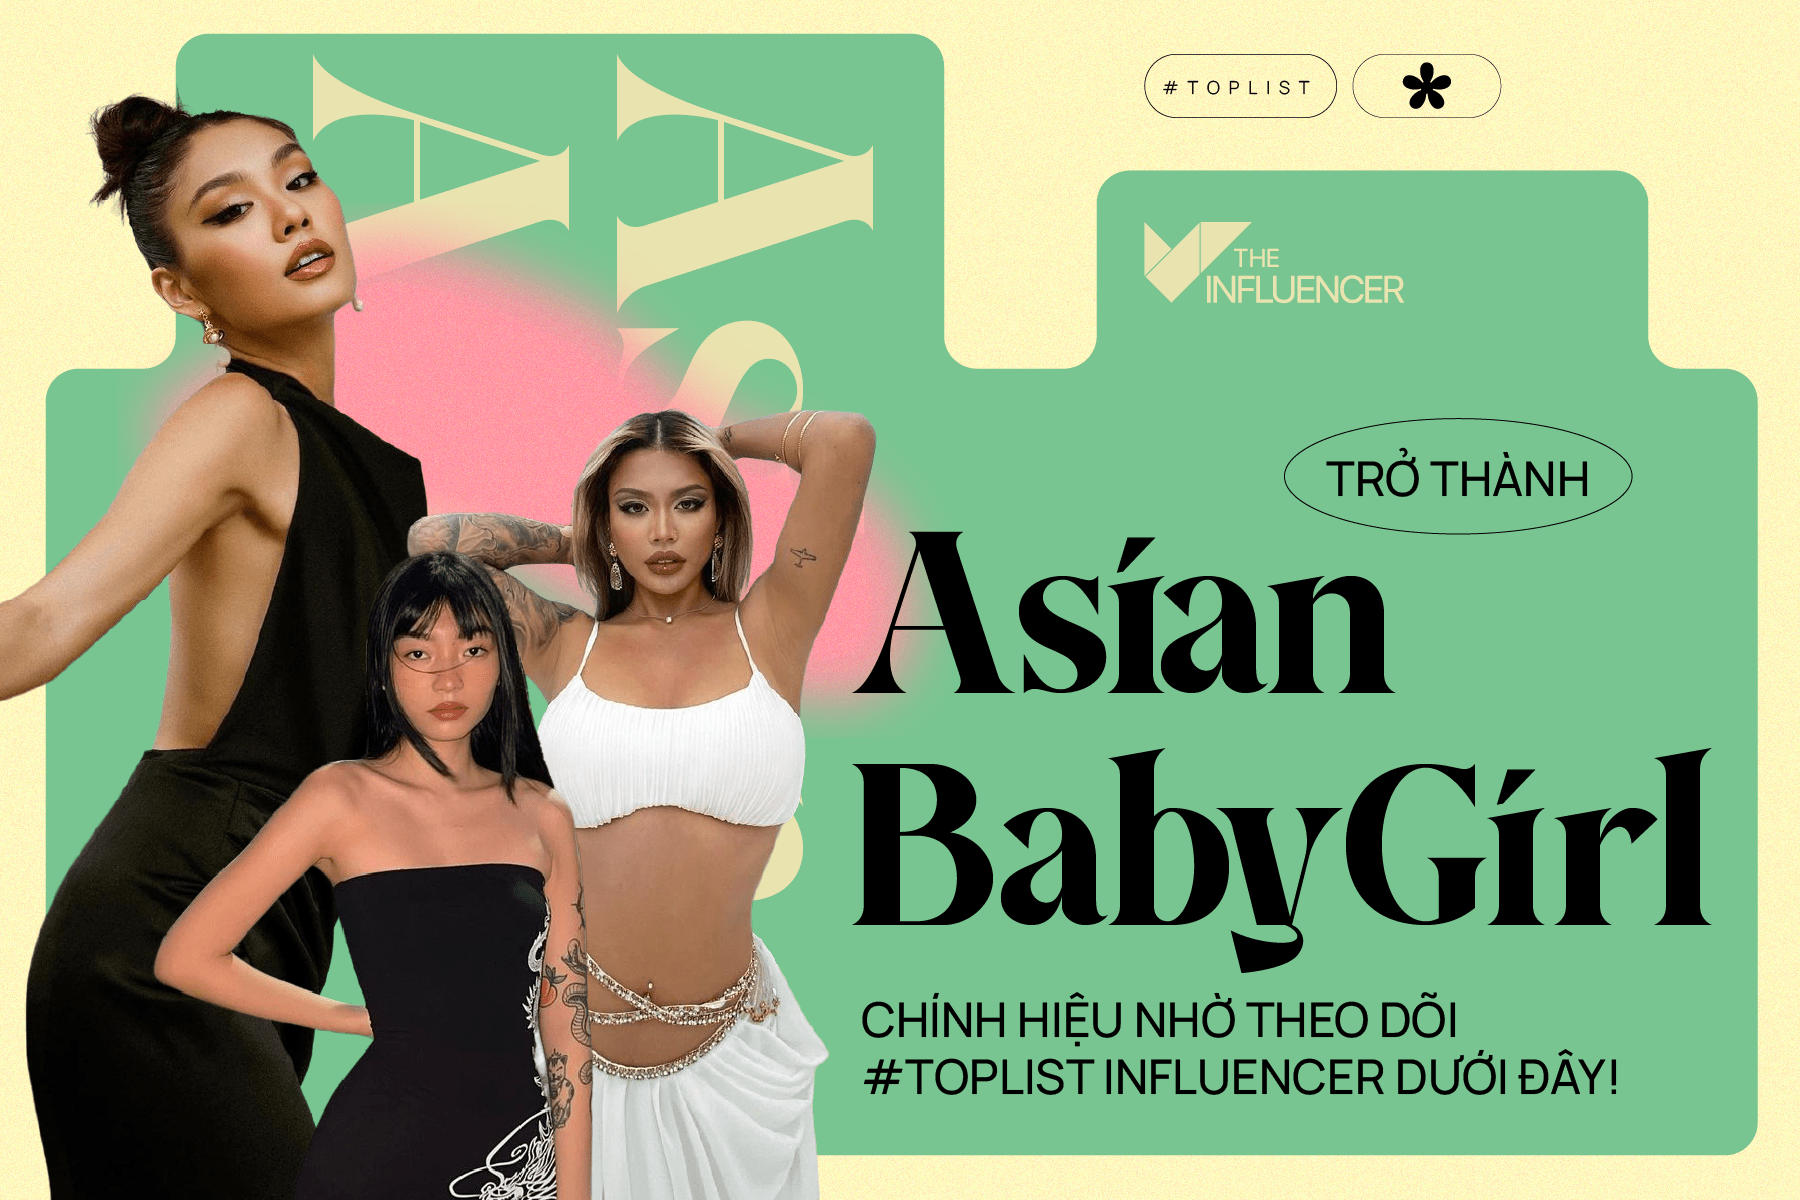 Trở thành Asian Baby Girl chính hiệu nhờ theo dõi #Toplist Influencer dưới đây!